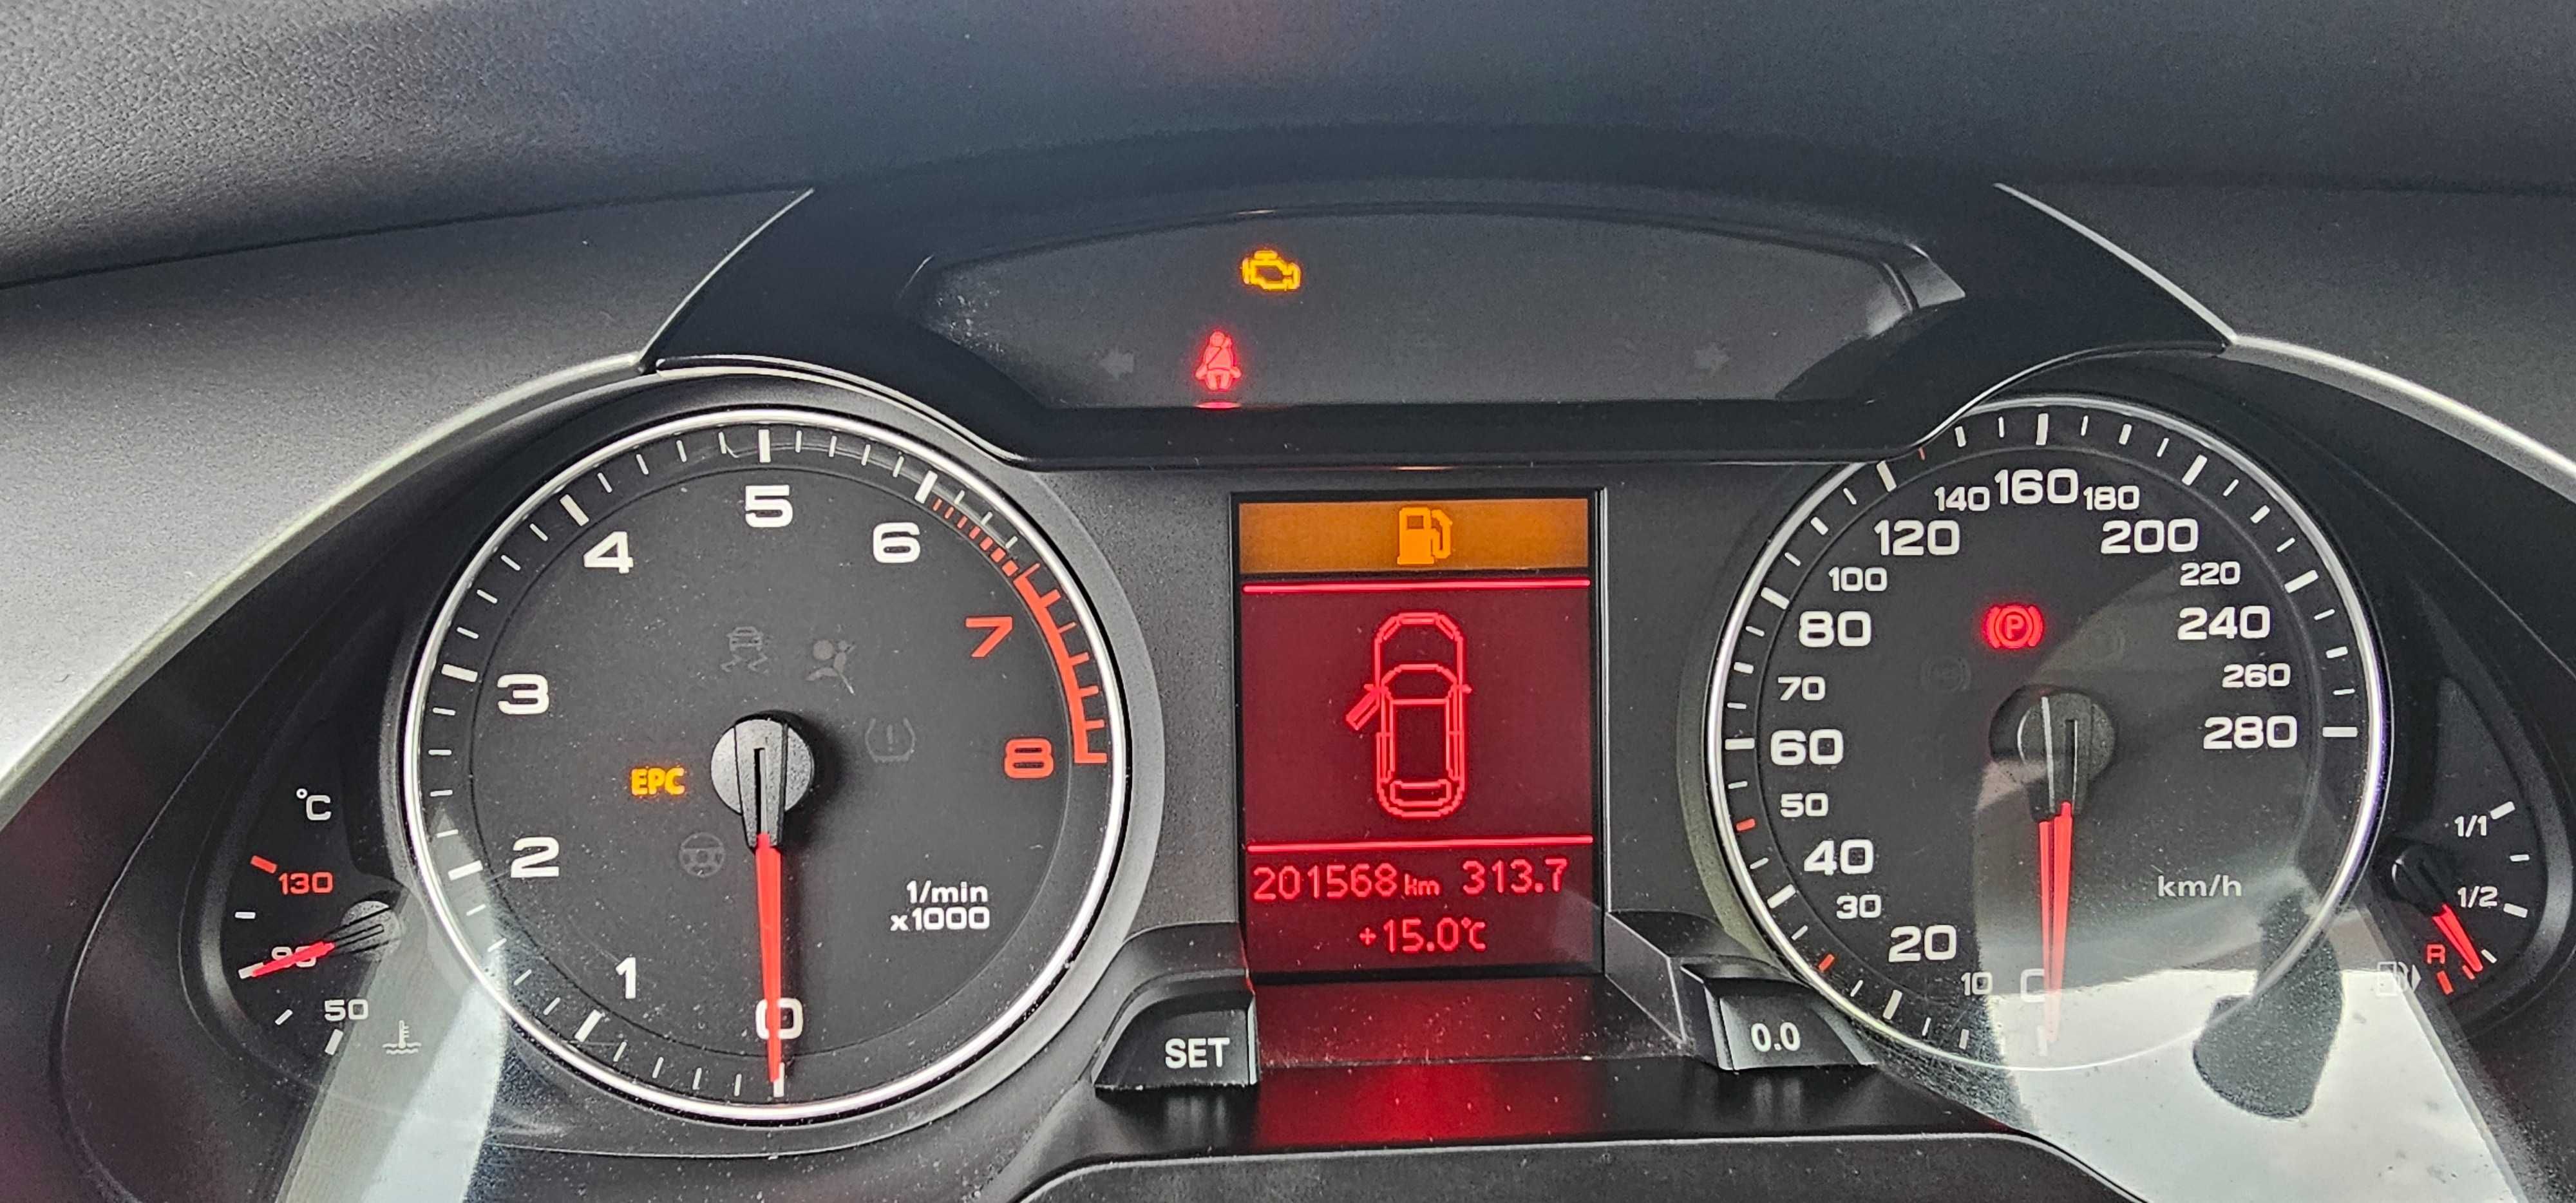 Audi A4 1.8 benzyna 160 KM Sprowadzony zarejestrowany ubezpieczony